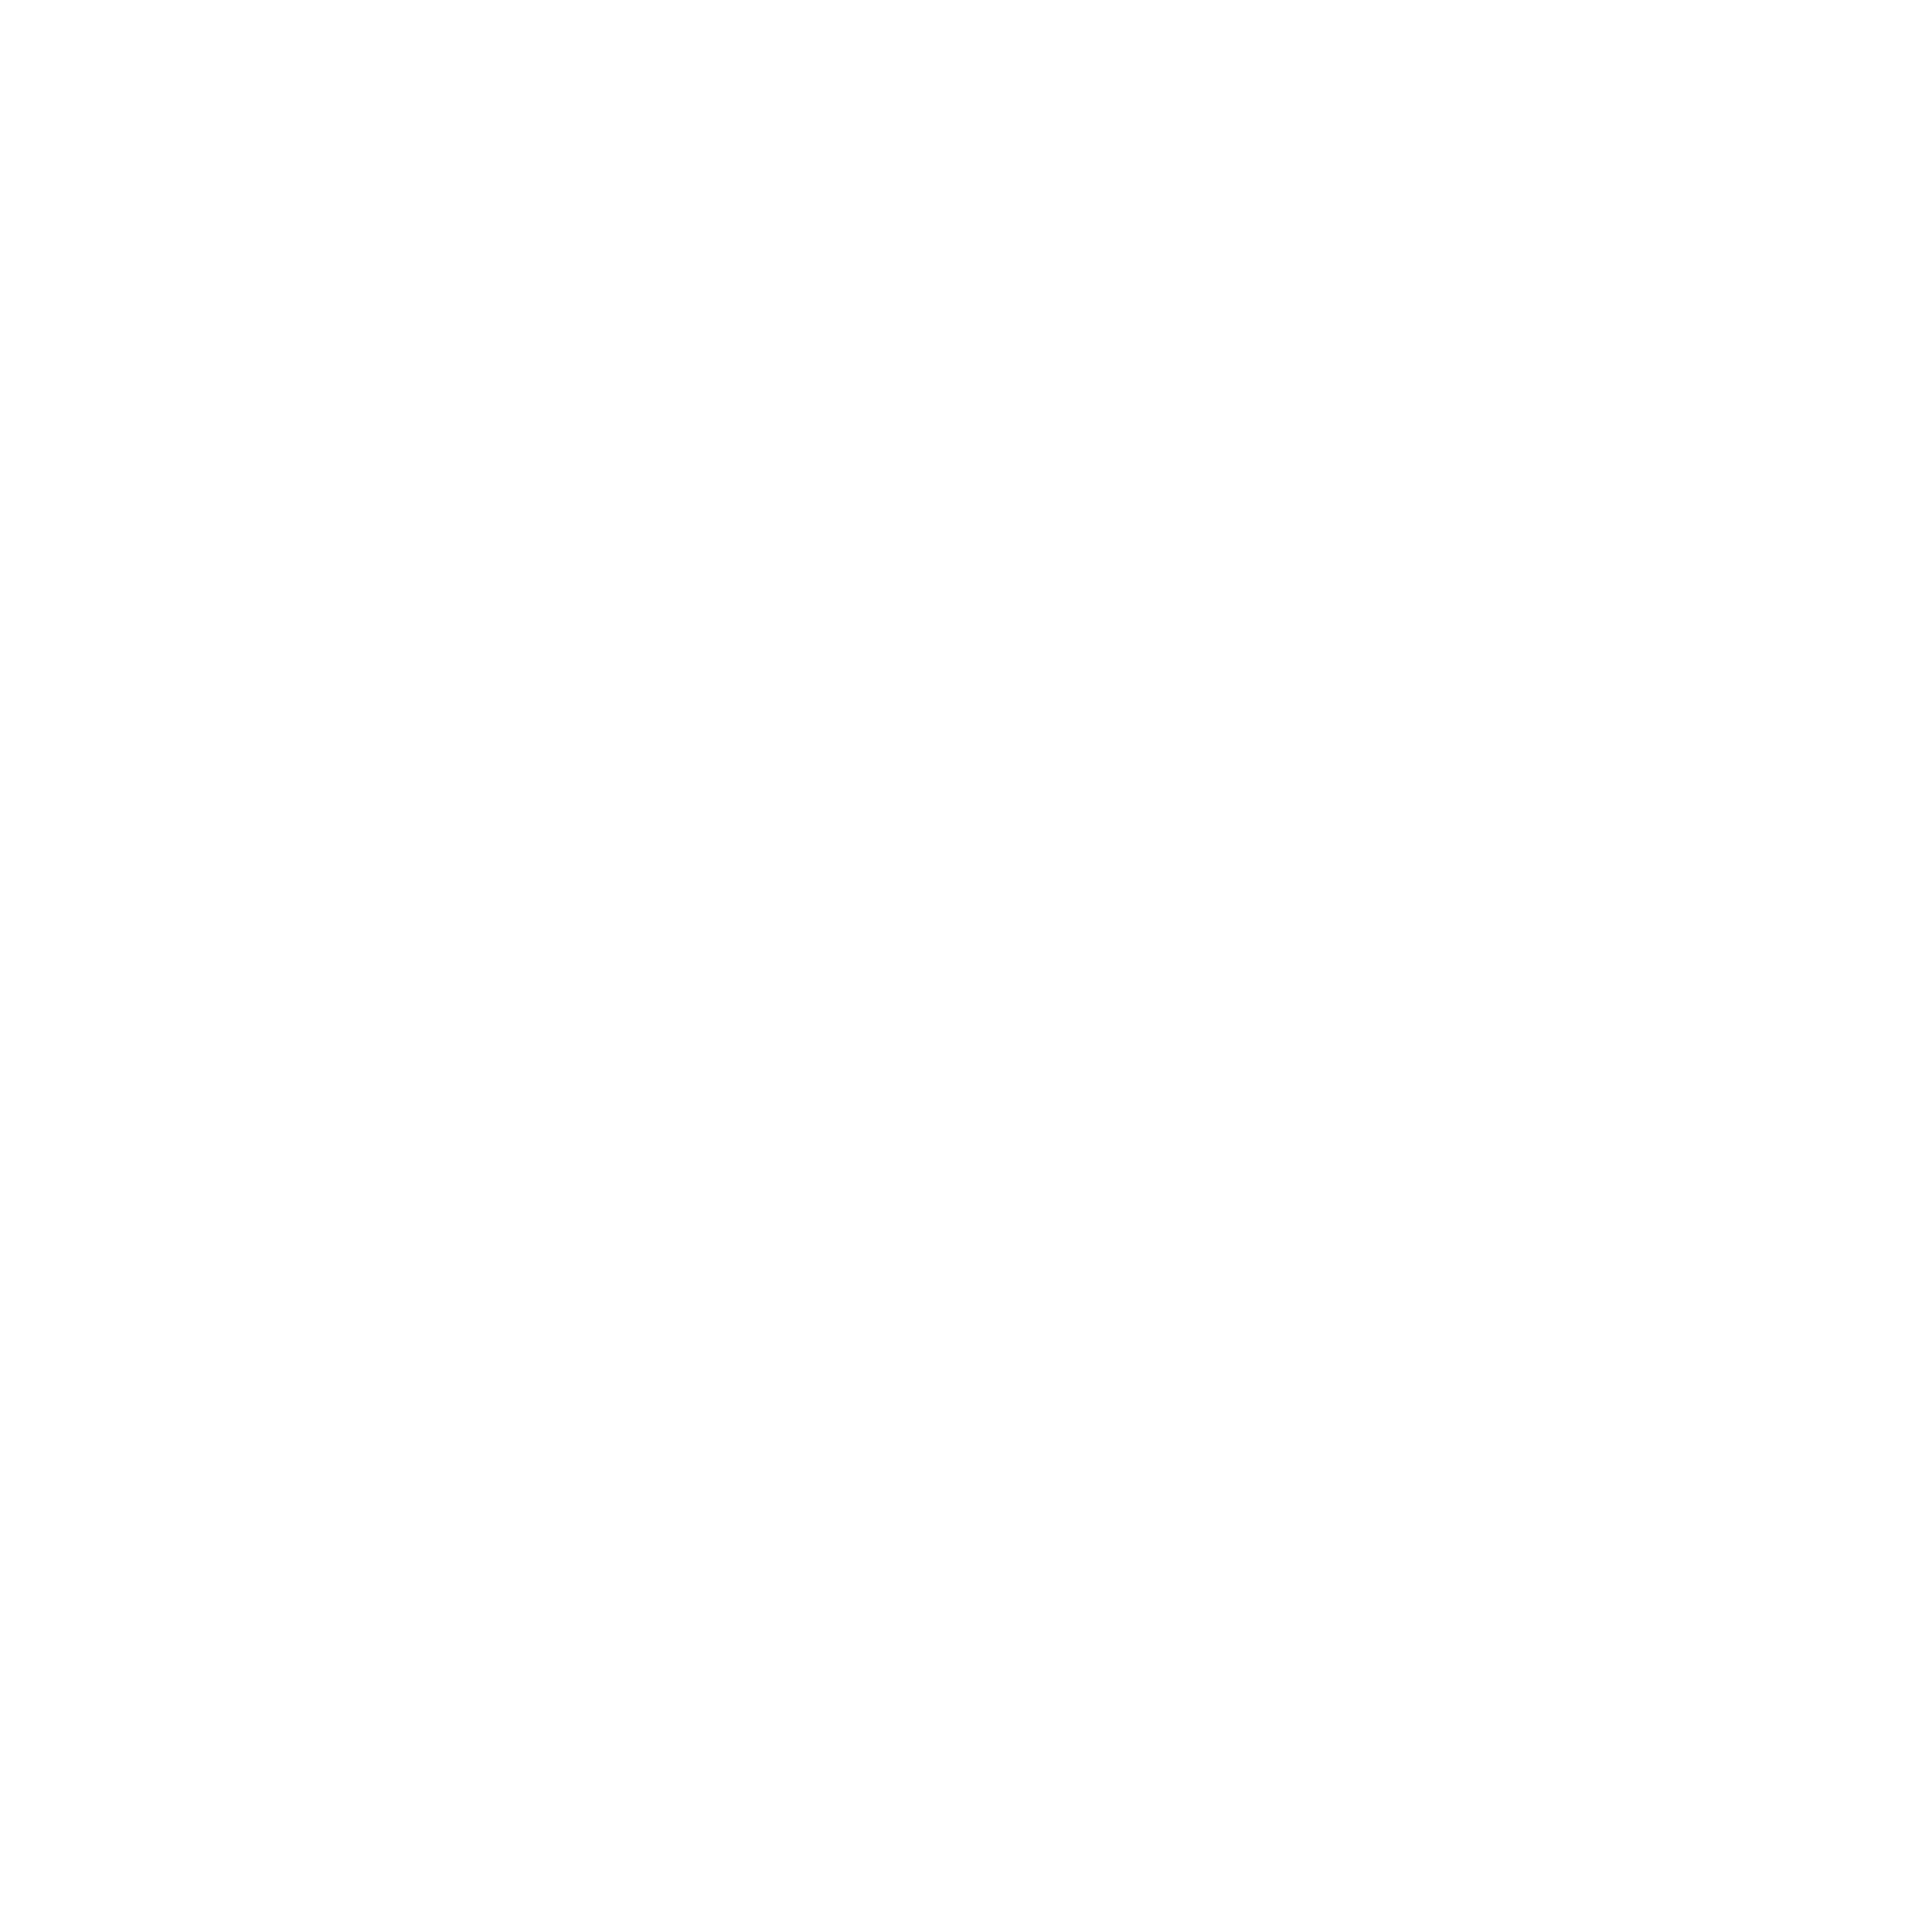 The niftie way galaxy